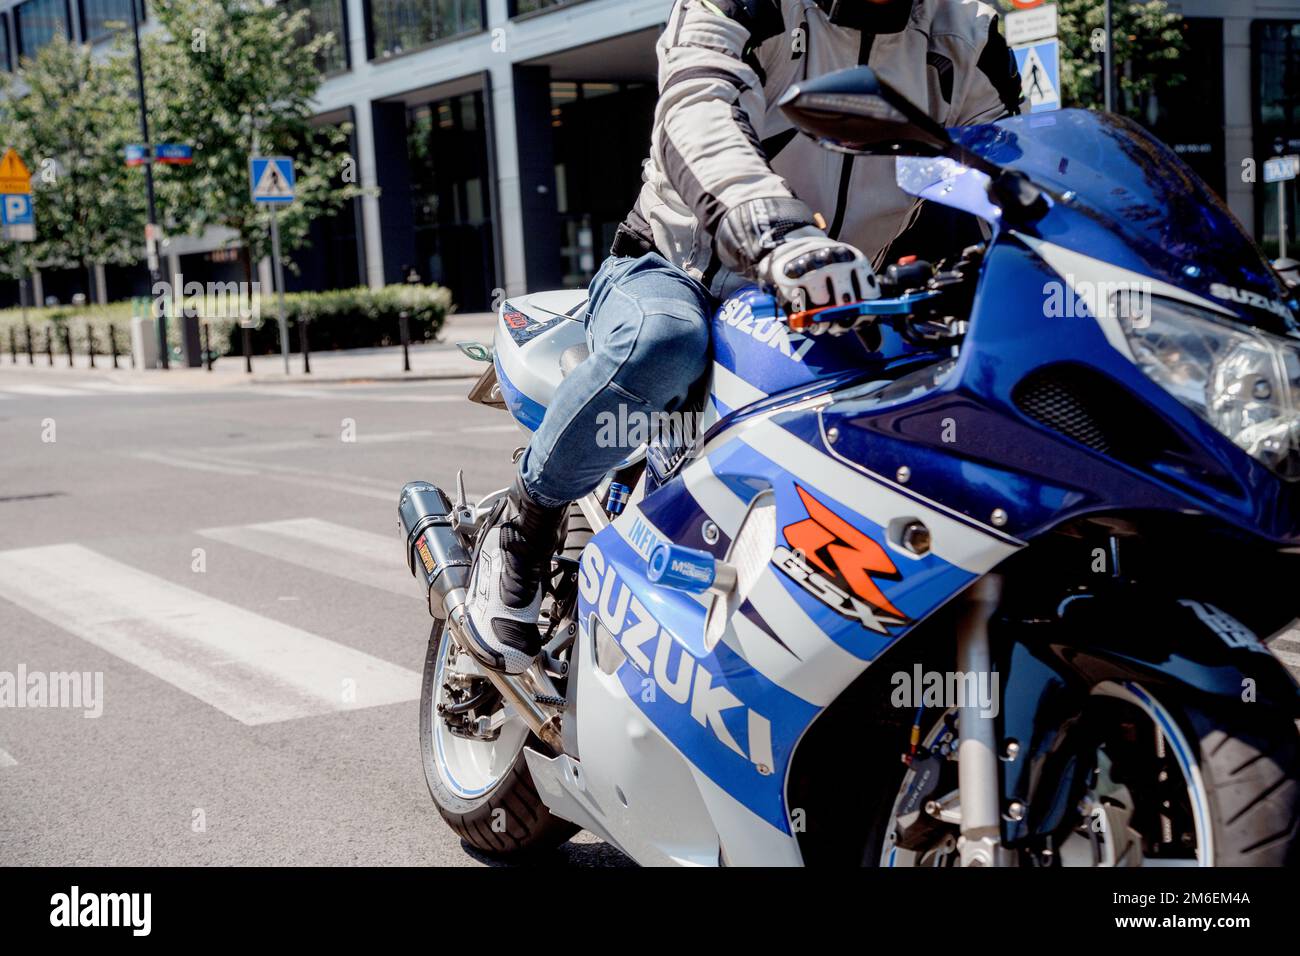 Varsavia. Polonia. 07/29/2020. Guglia di Varsavia. Guy on con una moto Suzuki sport blu. Un motociclista in un casco passa attraverso Foto Stock